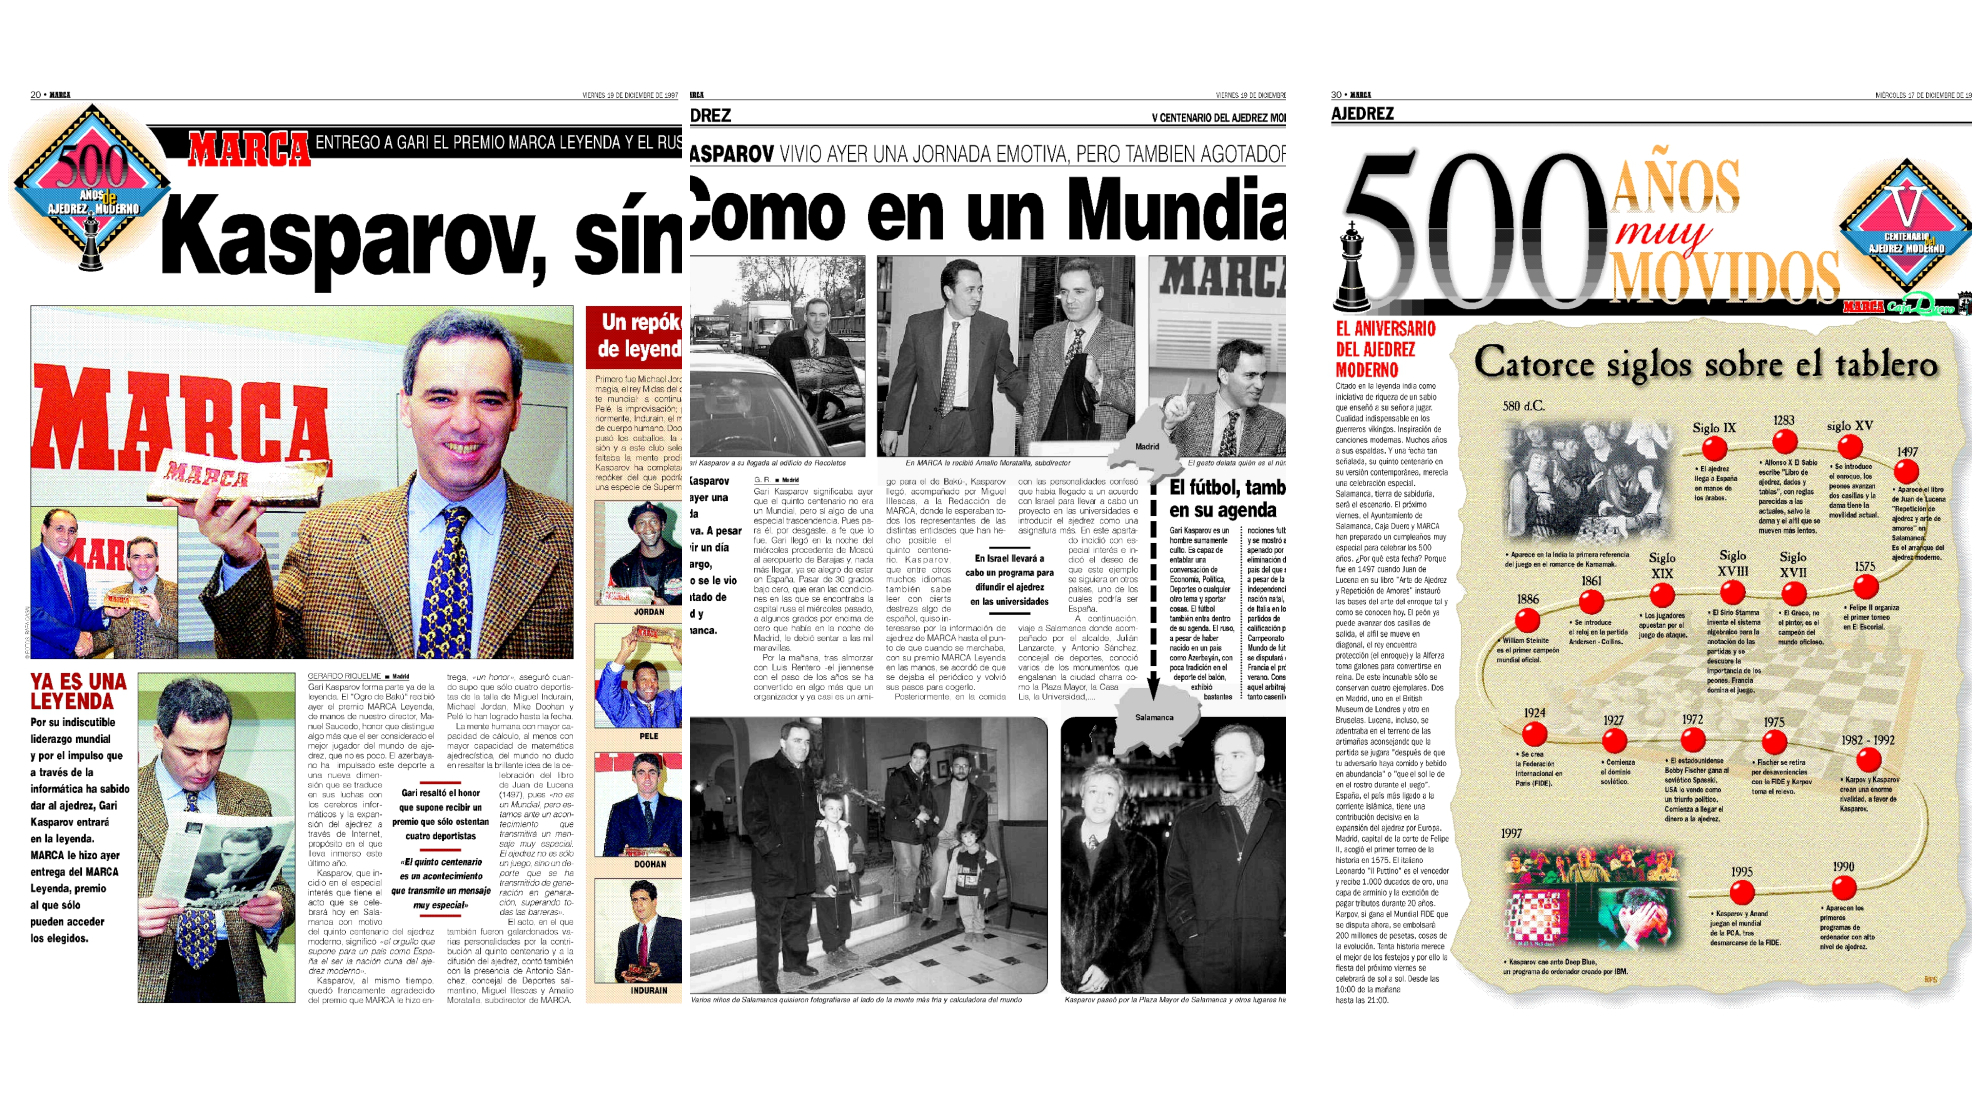 La visita de Kasparov a MARCA y Salamanca en 1997.